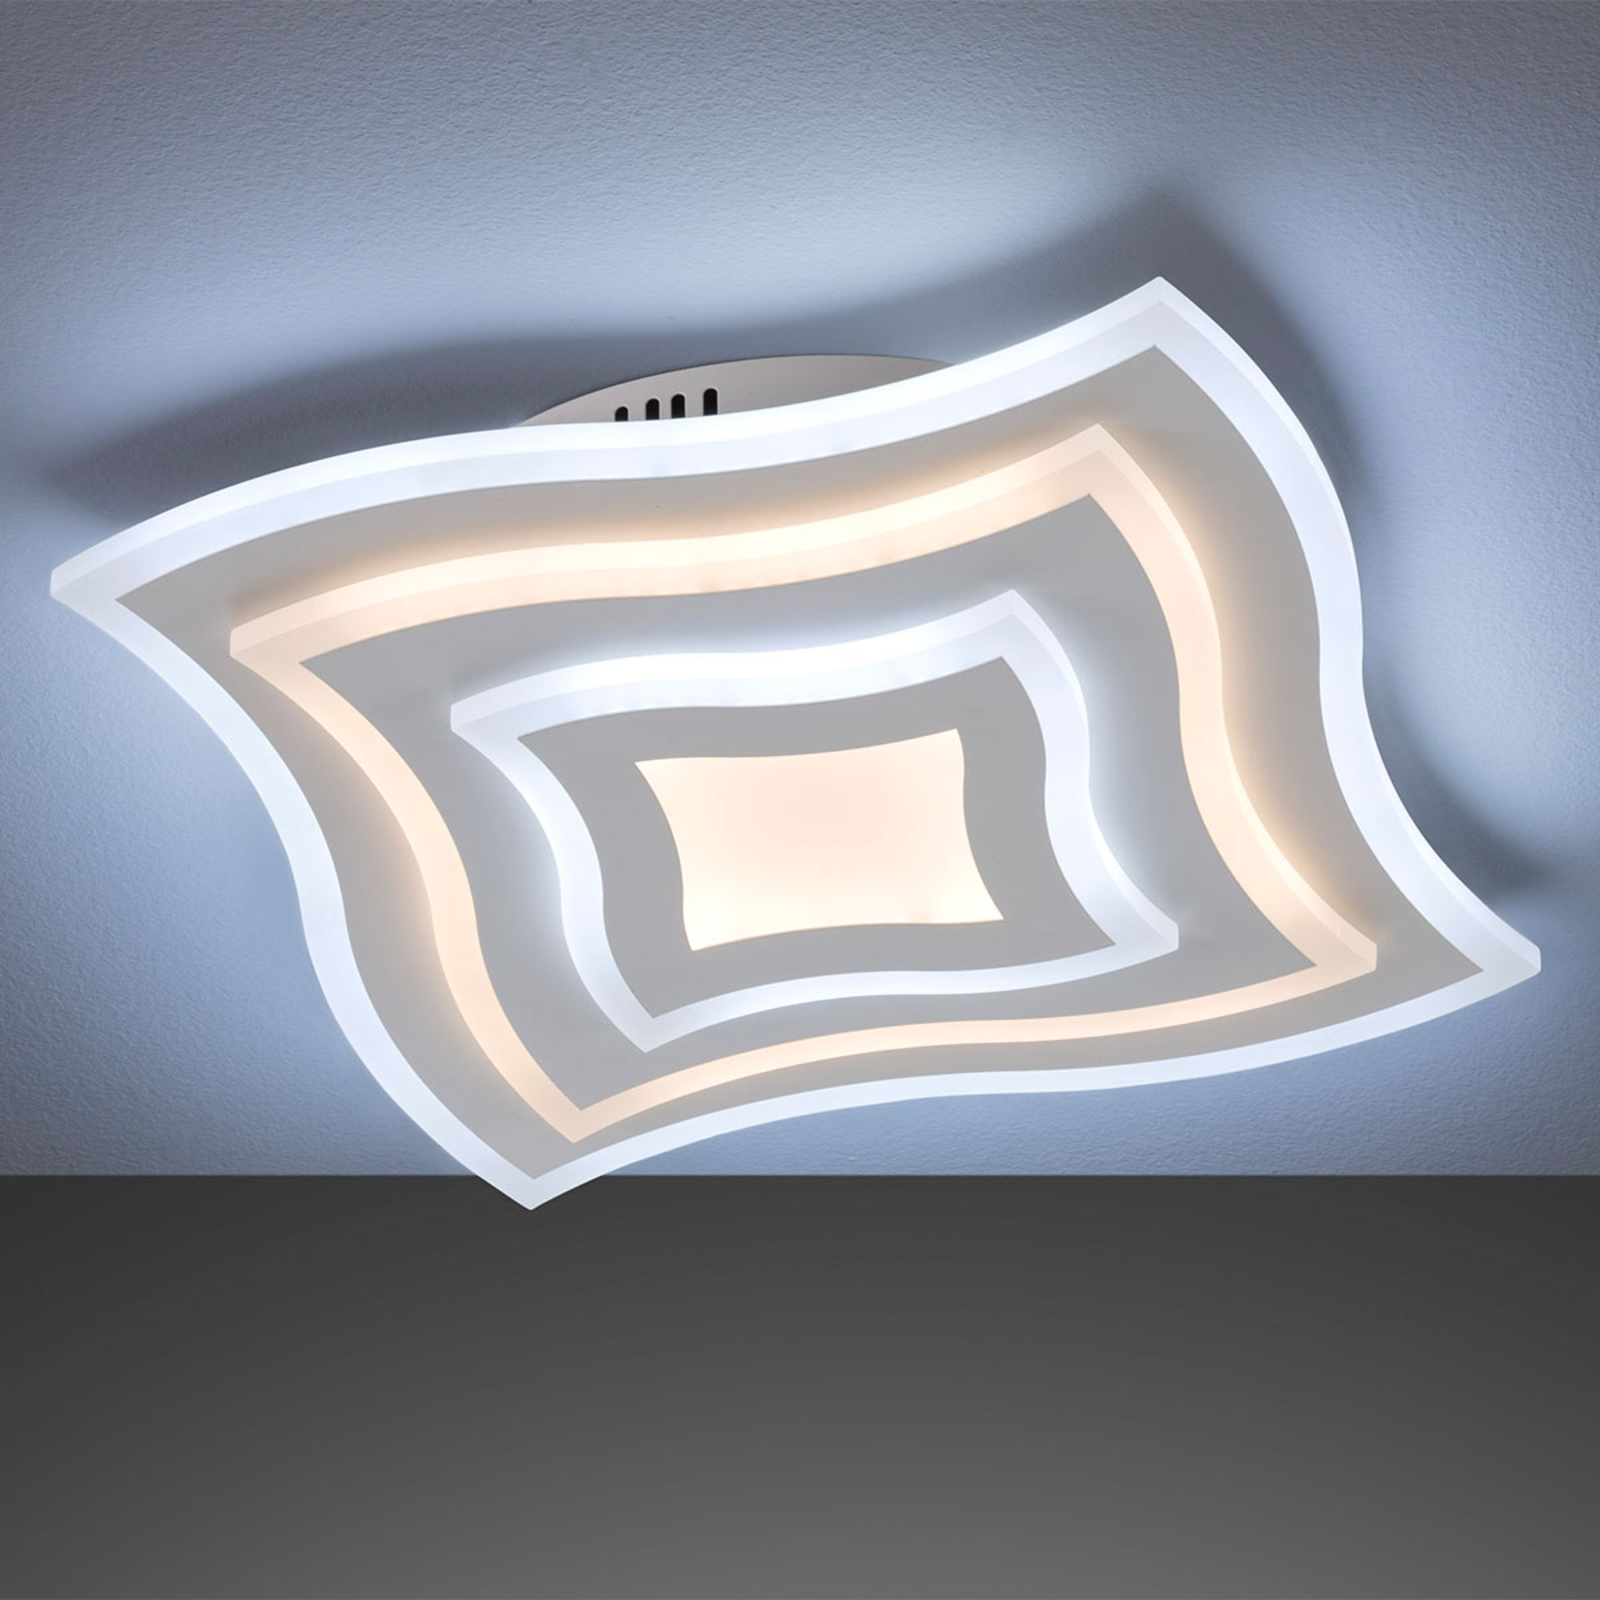 LED plafondlamp Gorden frame | Lampen24.nl